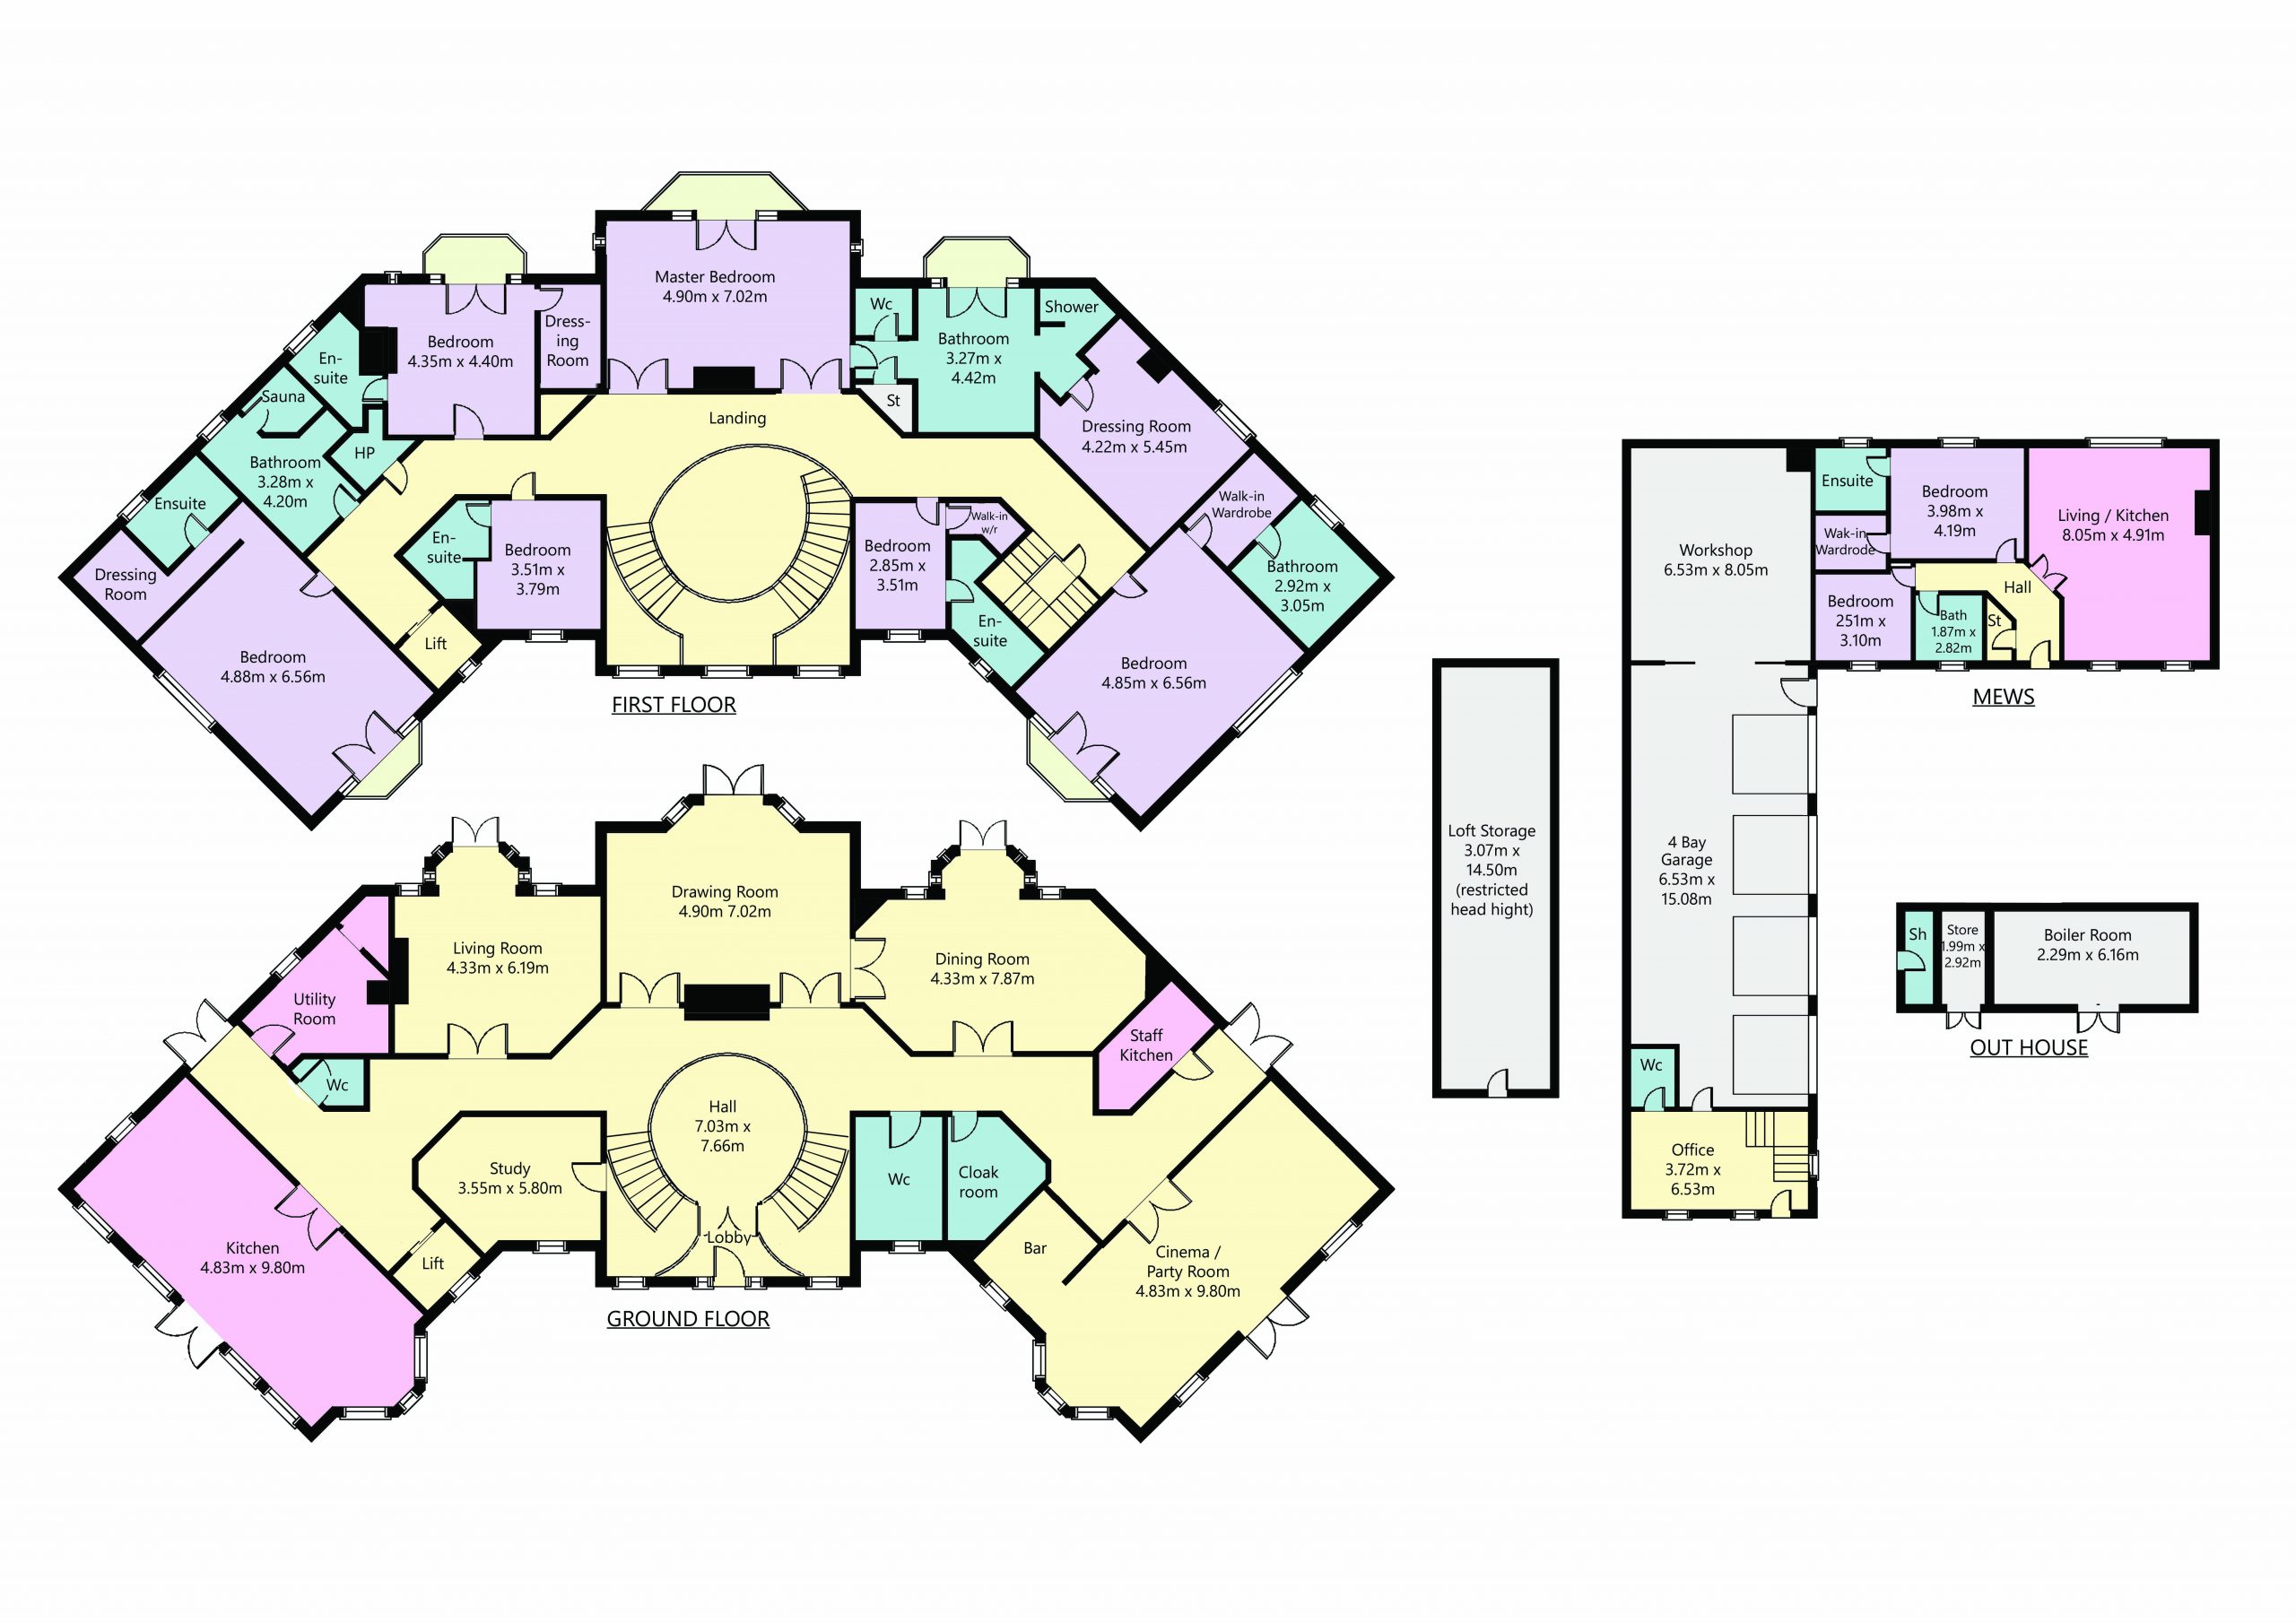 Updated Floorplan